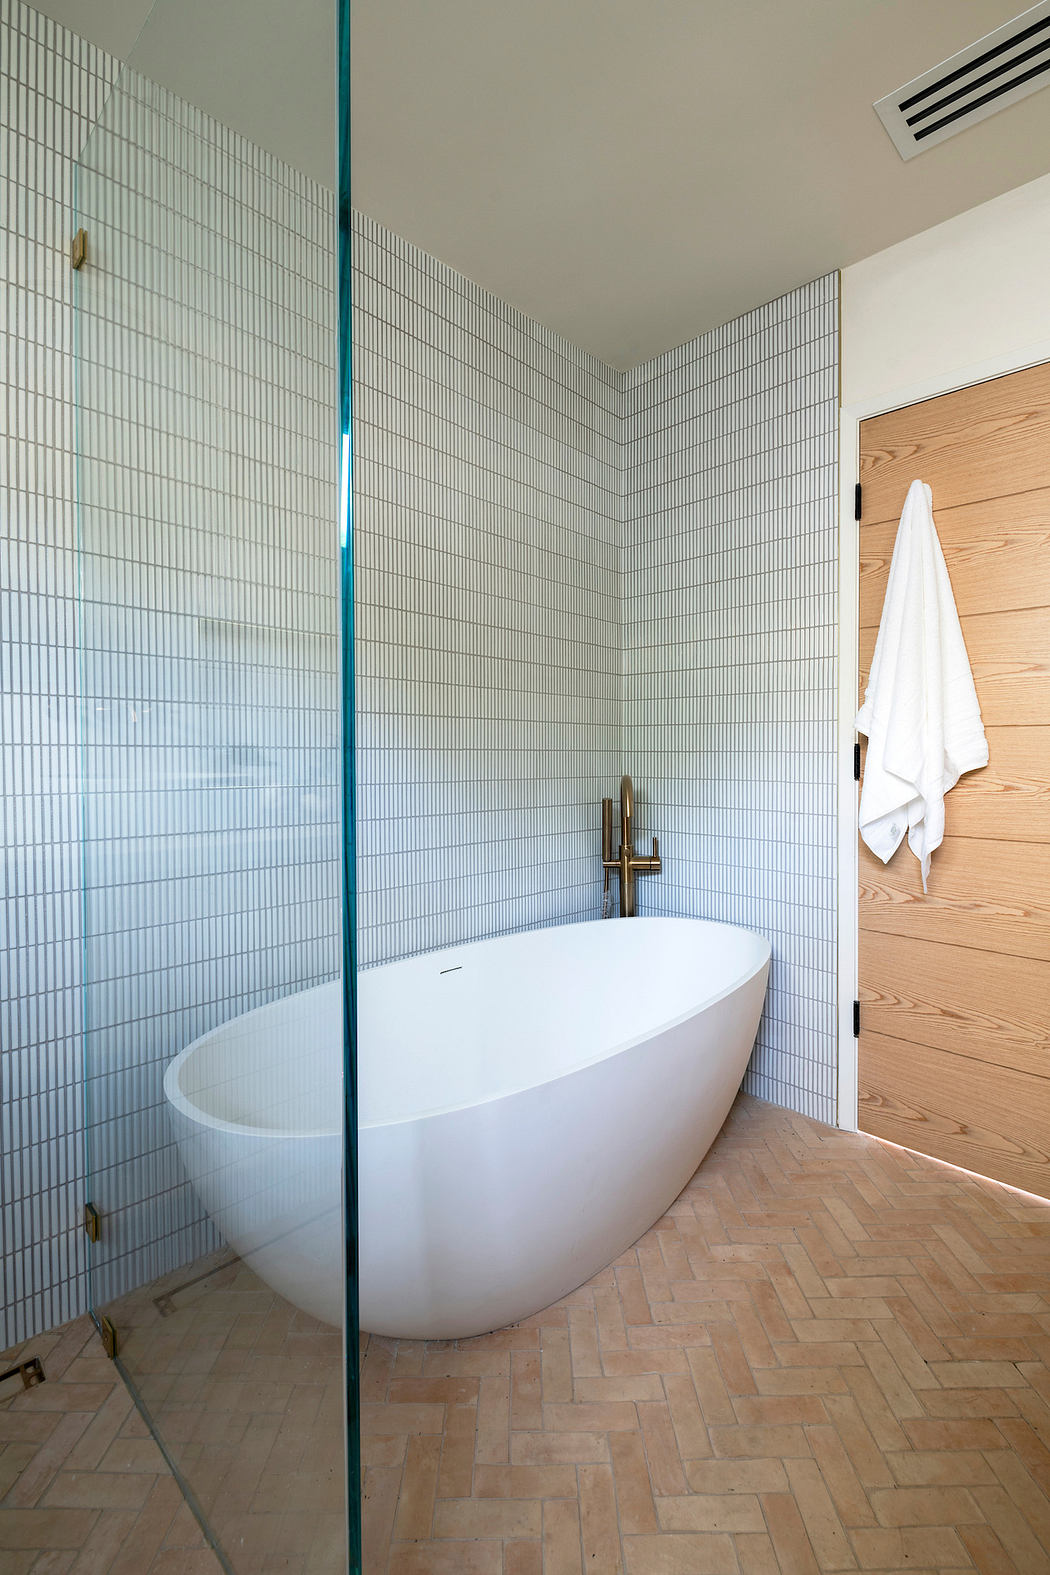 Modern bathroom with white freestanding tub, herringbone wood floor, and